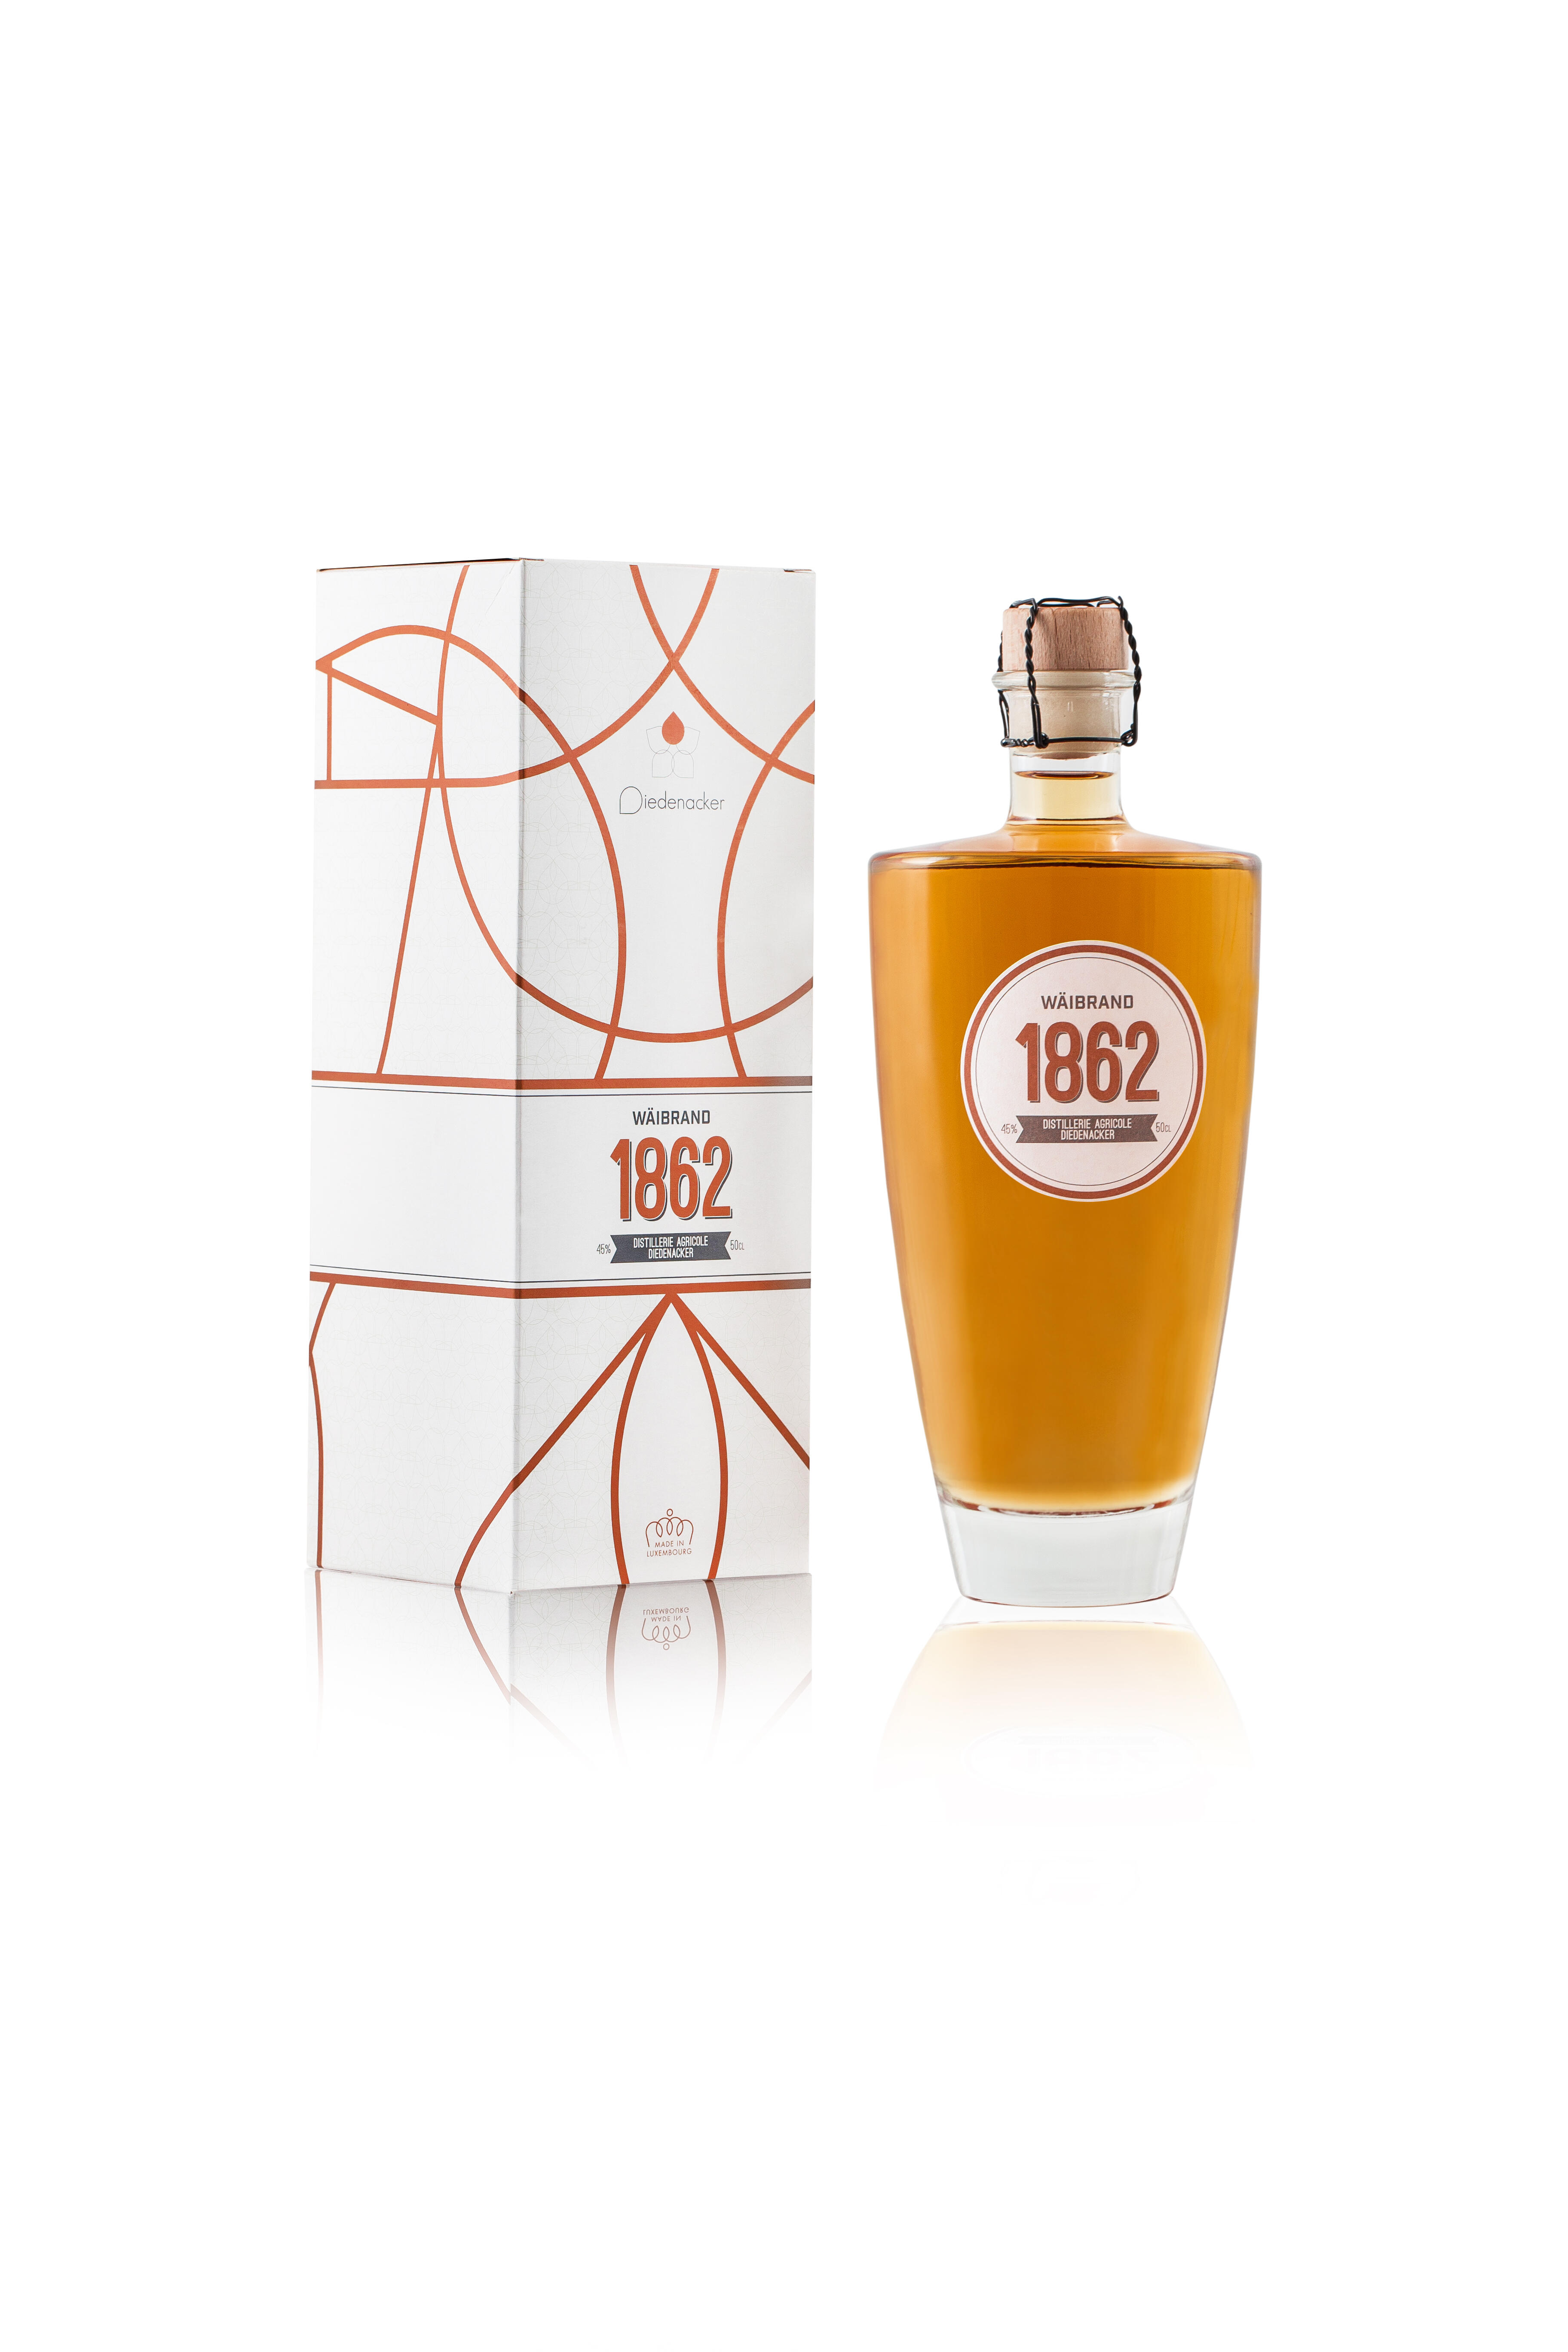 DIEDENACKER brandy 1862 50cl 45%vol